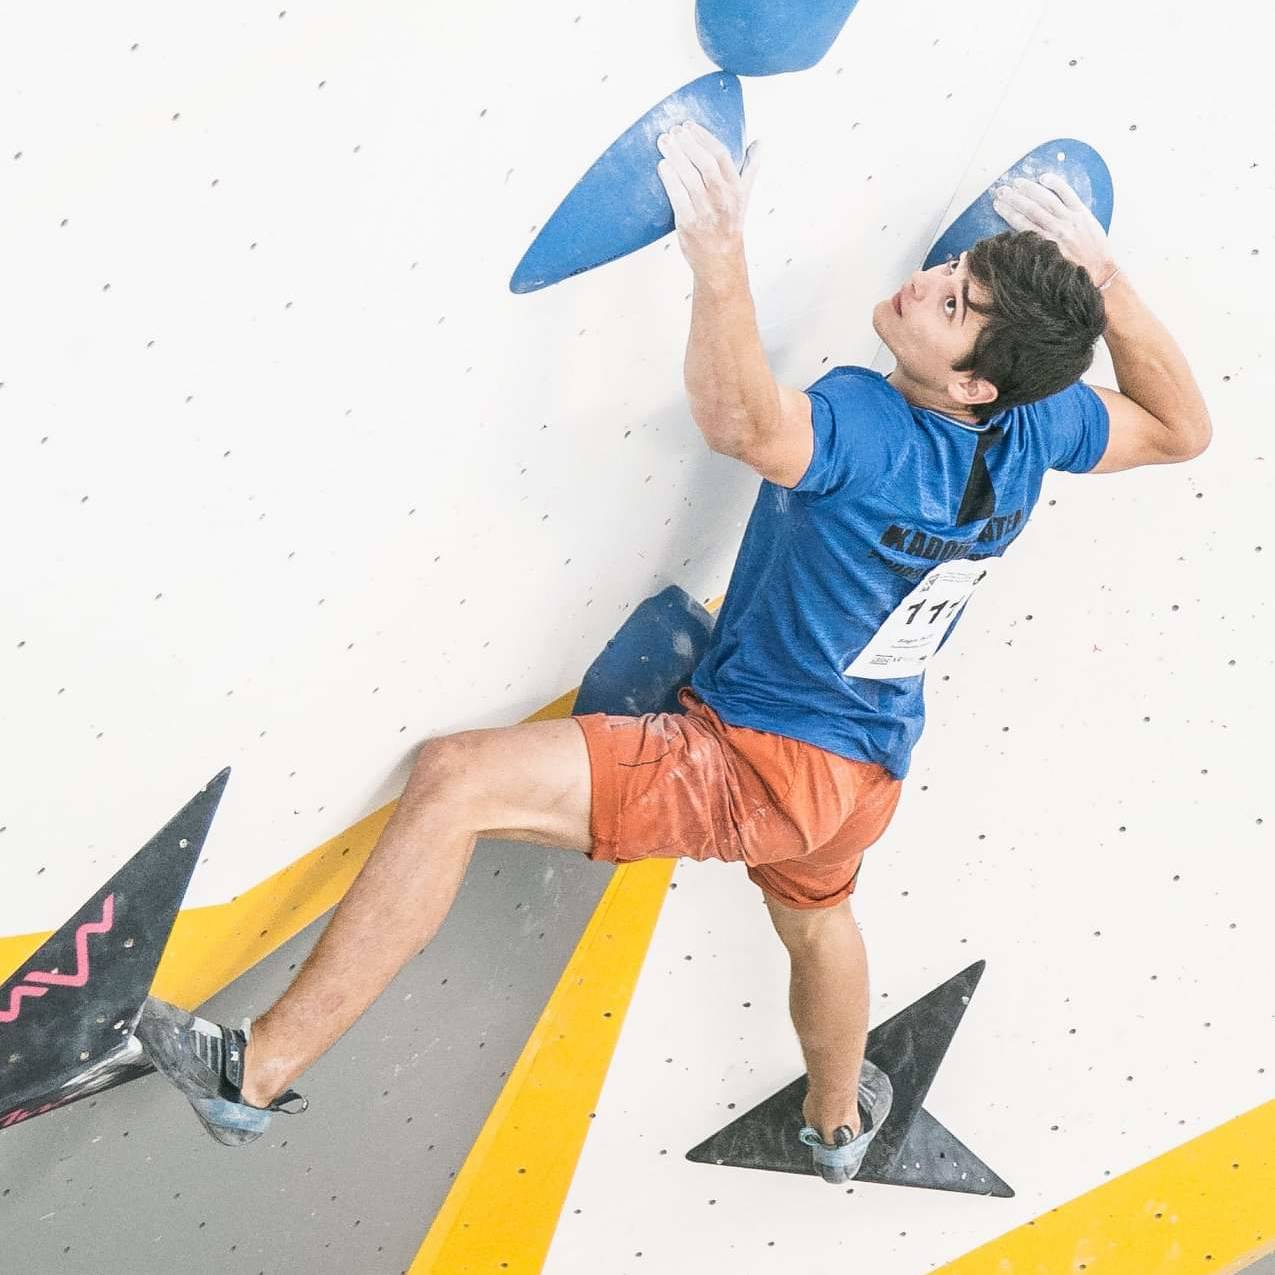 pietro biagini lead contest milano climbing expo urban wall competizione arrampicata